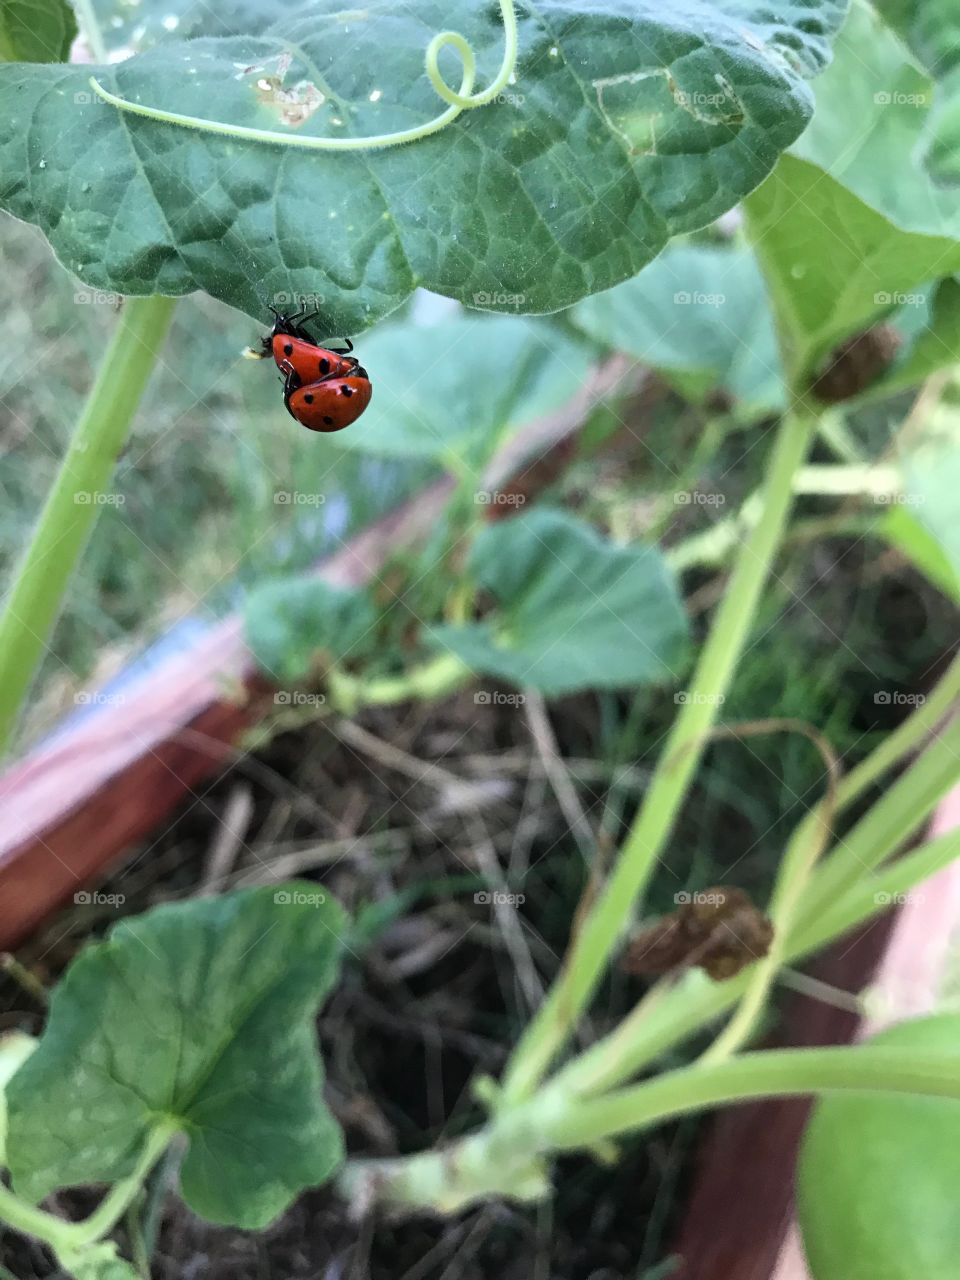 Lady bugs on gourd leaf